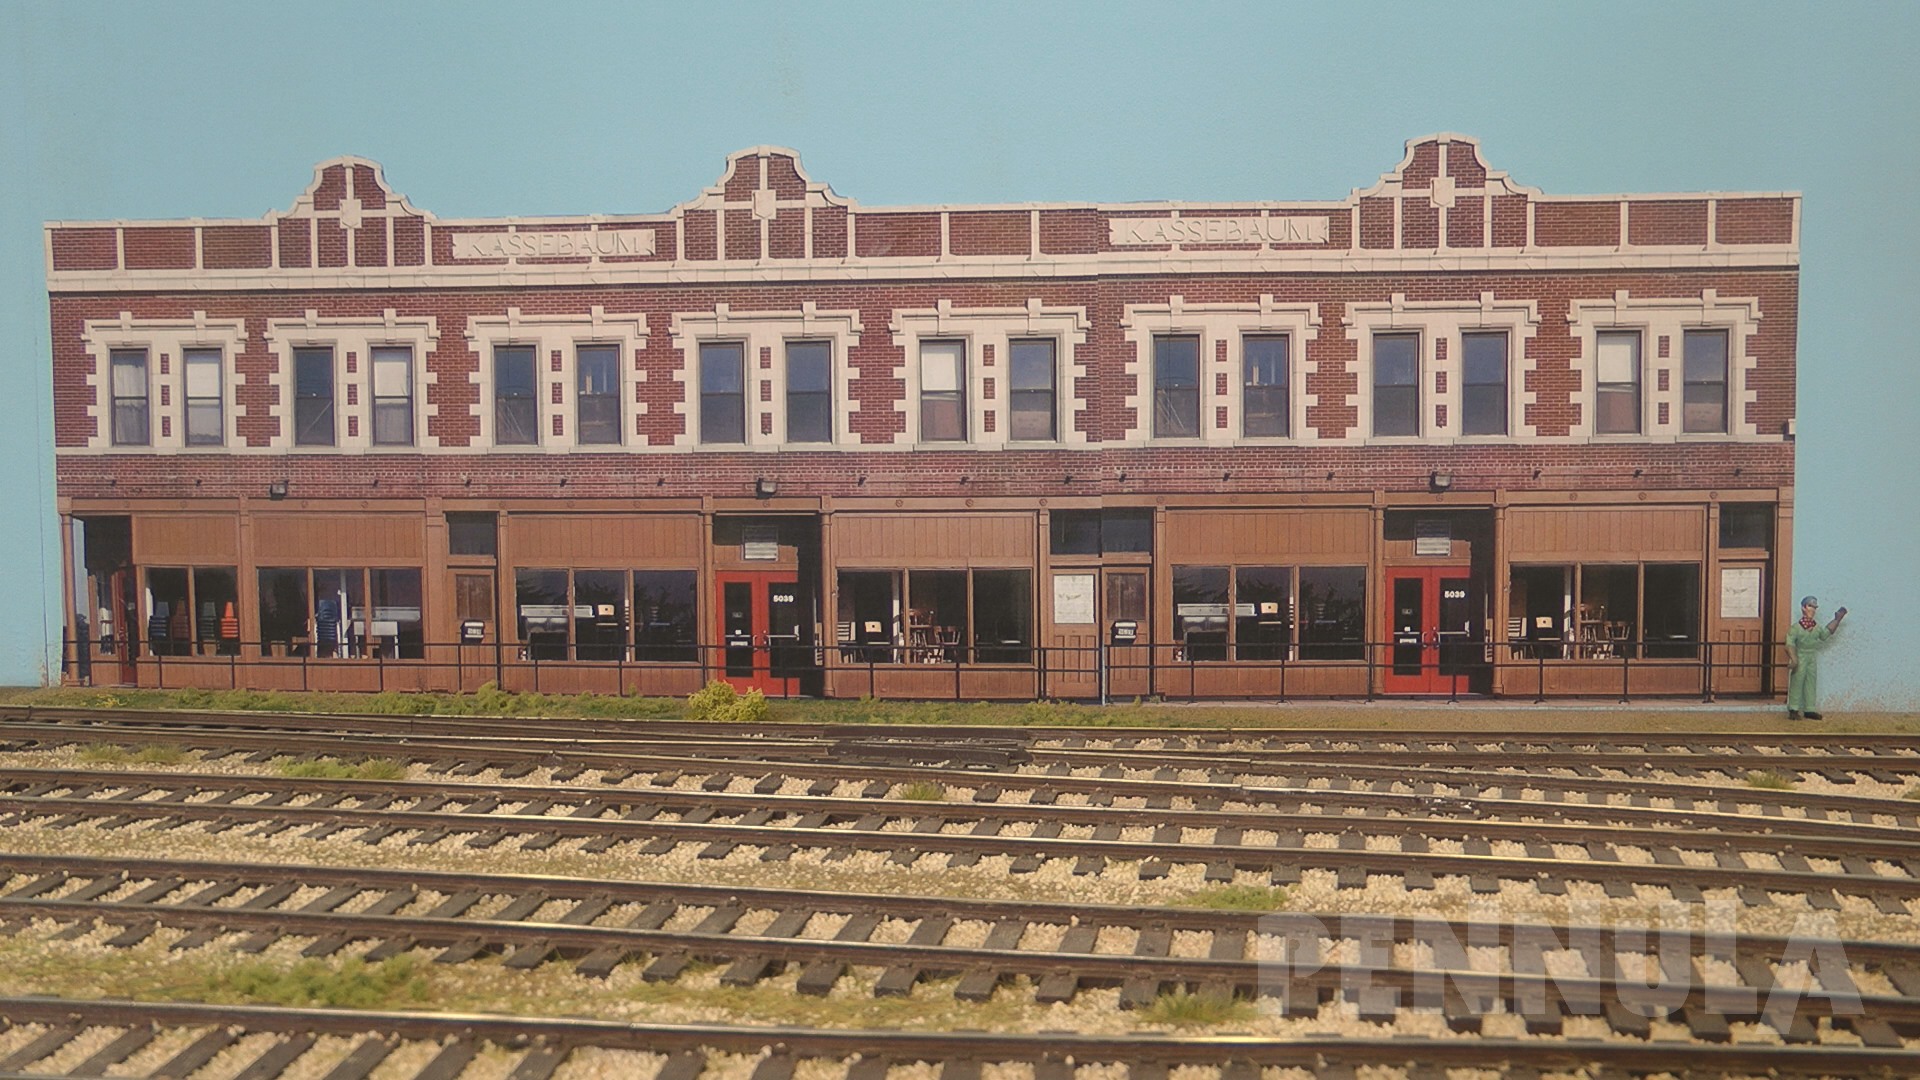 Dies war eine Bahngesellschaft im Nordosten der USA; einst das älteste amerikanische Eisenbahnunternehmen mit ununterbrochenem Betrieb.